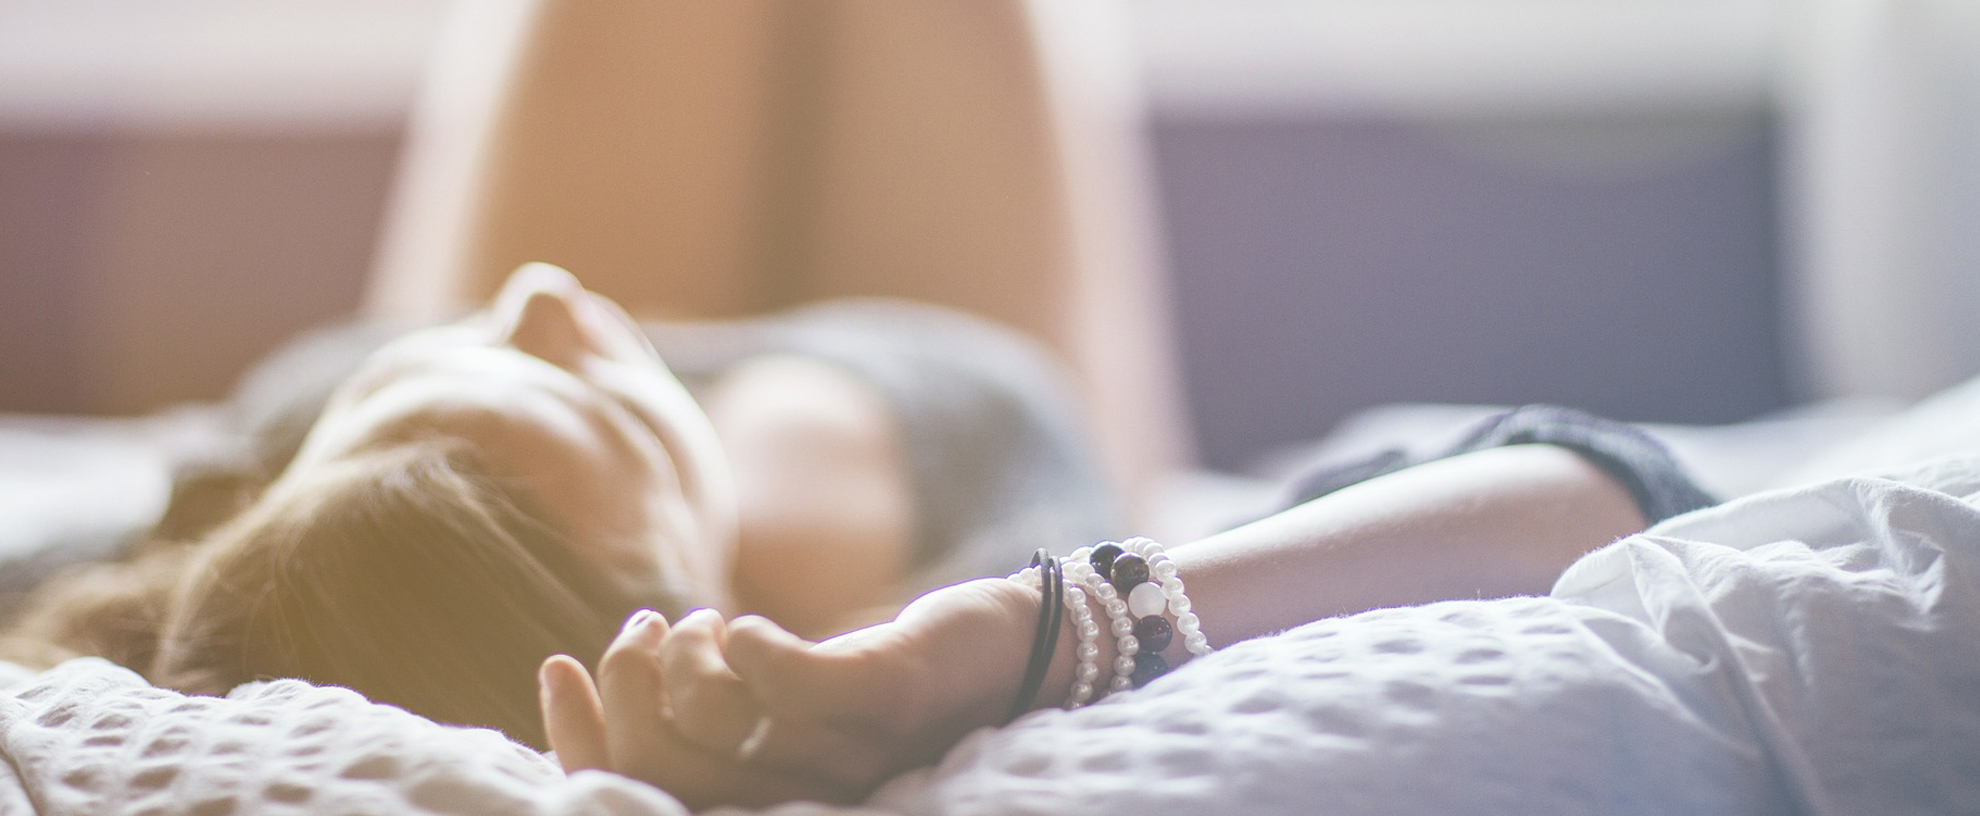 15 lucruri pe care le înţelegi perfect dacă îţi place să dormi singur